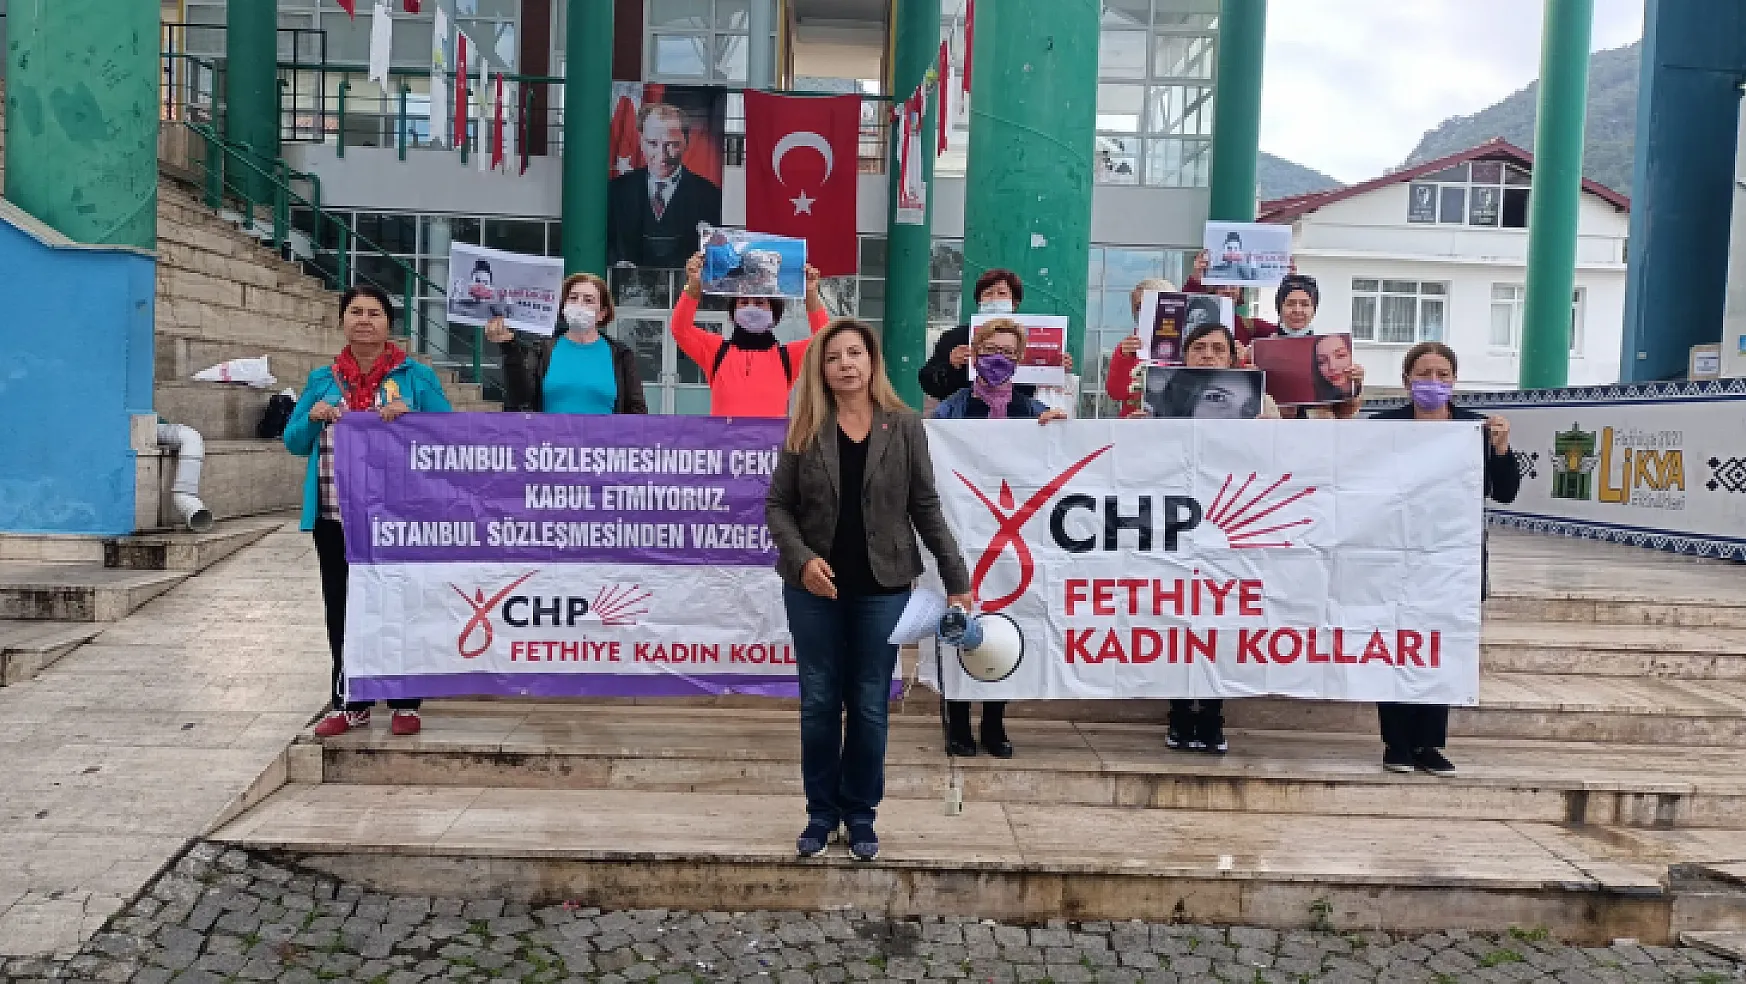 CHP'den 'Kadına yönelik şiddete hayır' açıklaması